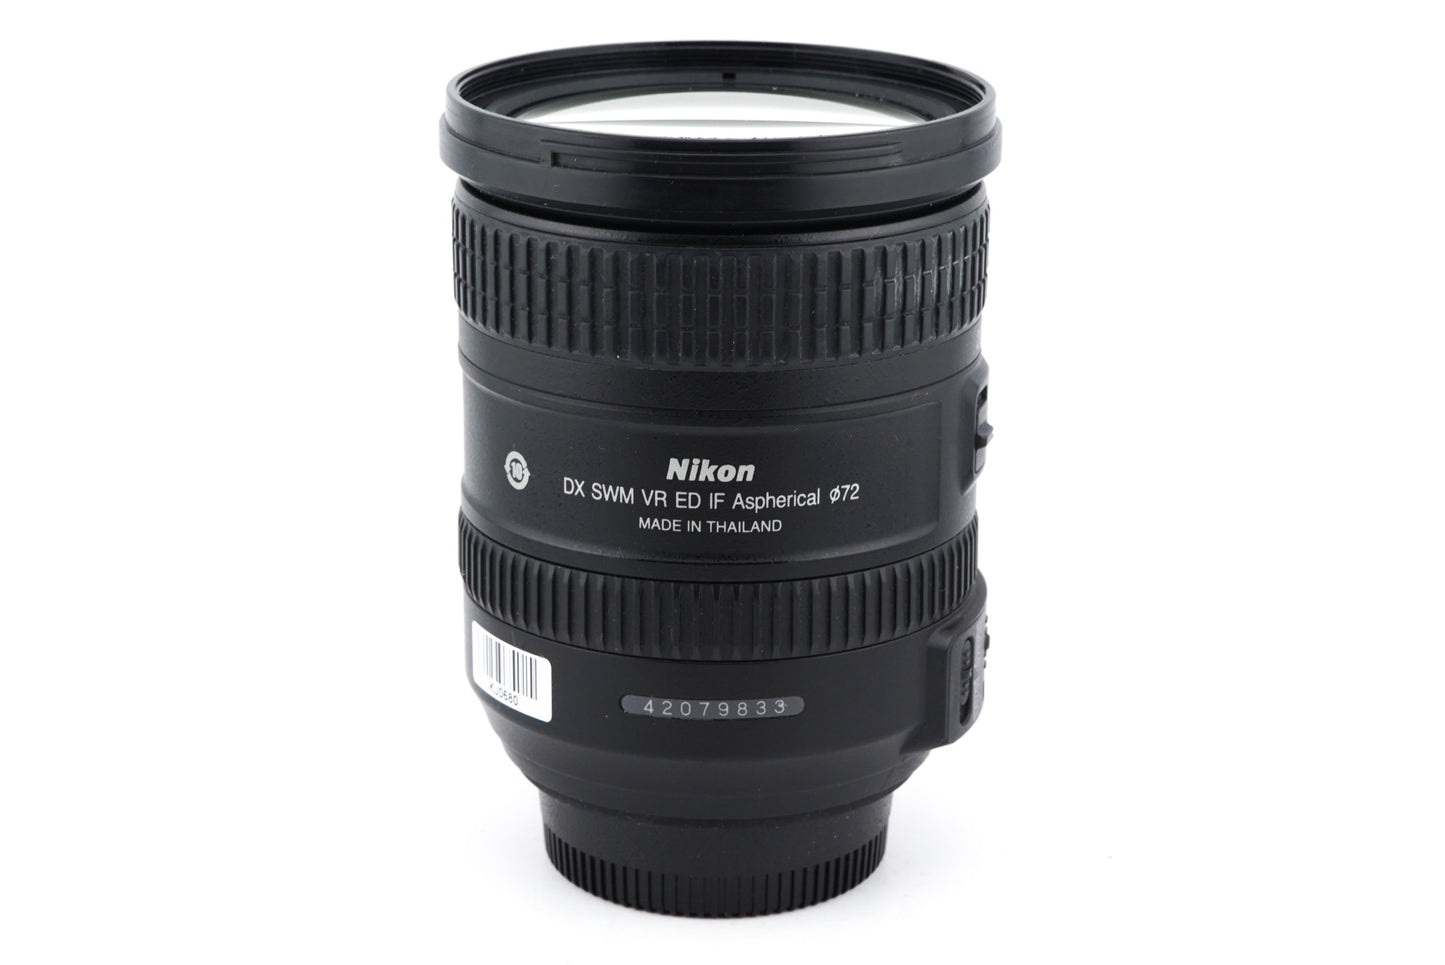 Nikon 18-200mm f3.5-5.6 G ED VR II AF-S Nikkor